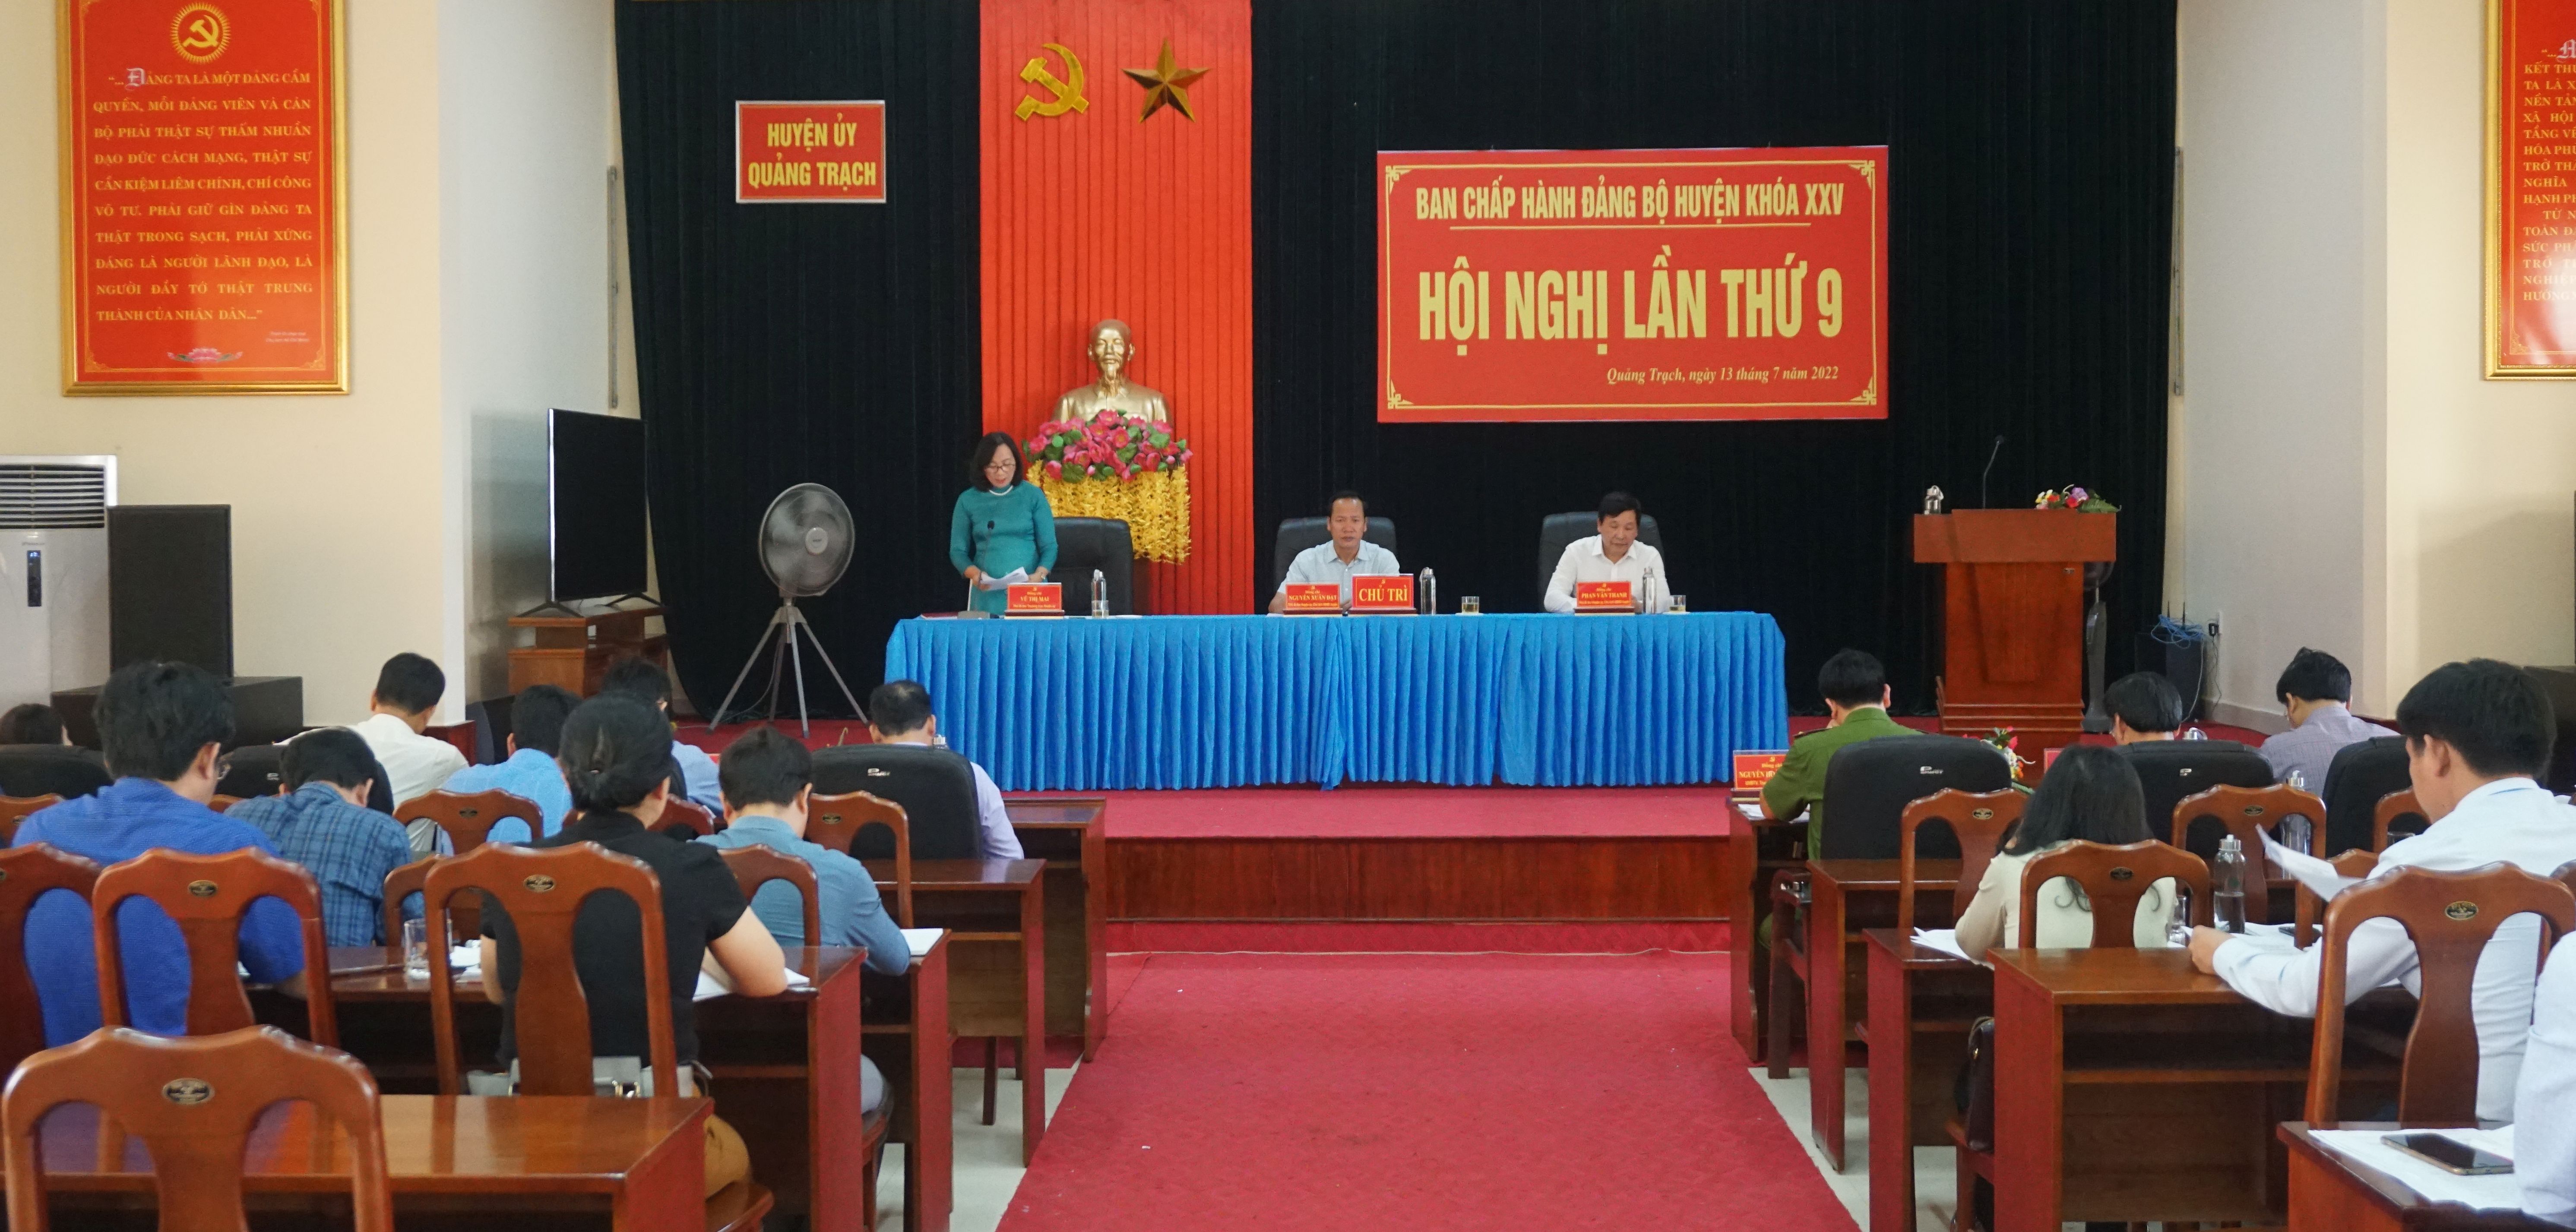 Huyện ủy Quảng Trạch: Tập trung chỉ đạo hoàn thành các chỉ tiêu kinh tế-xã hội năm 2022